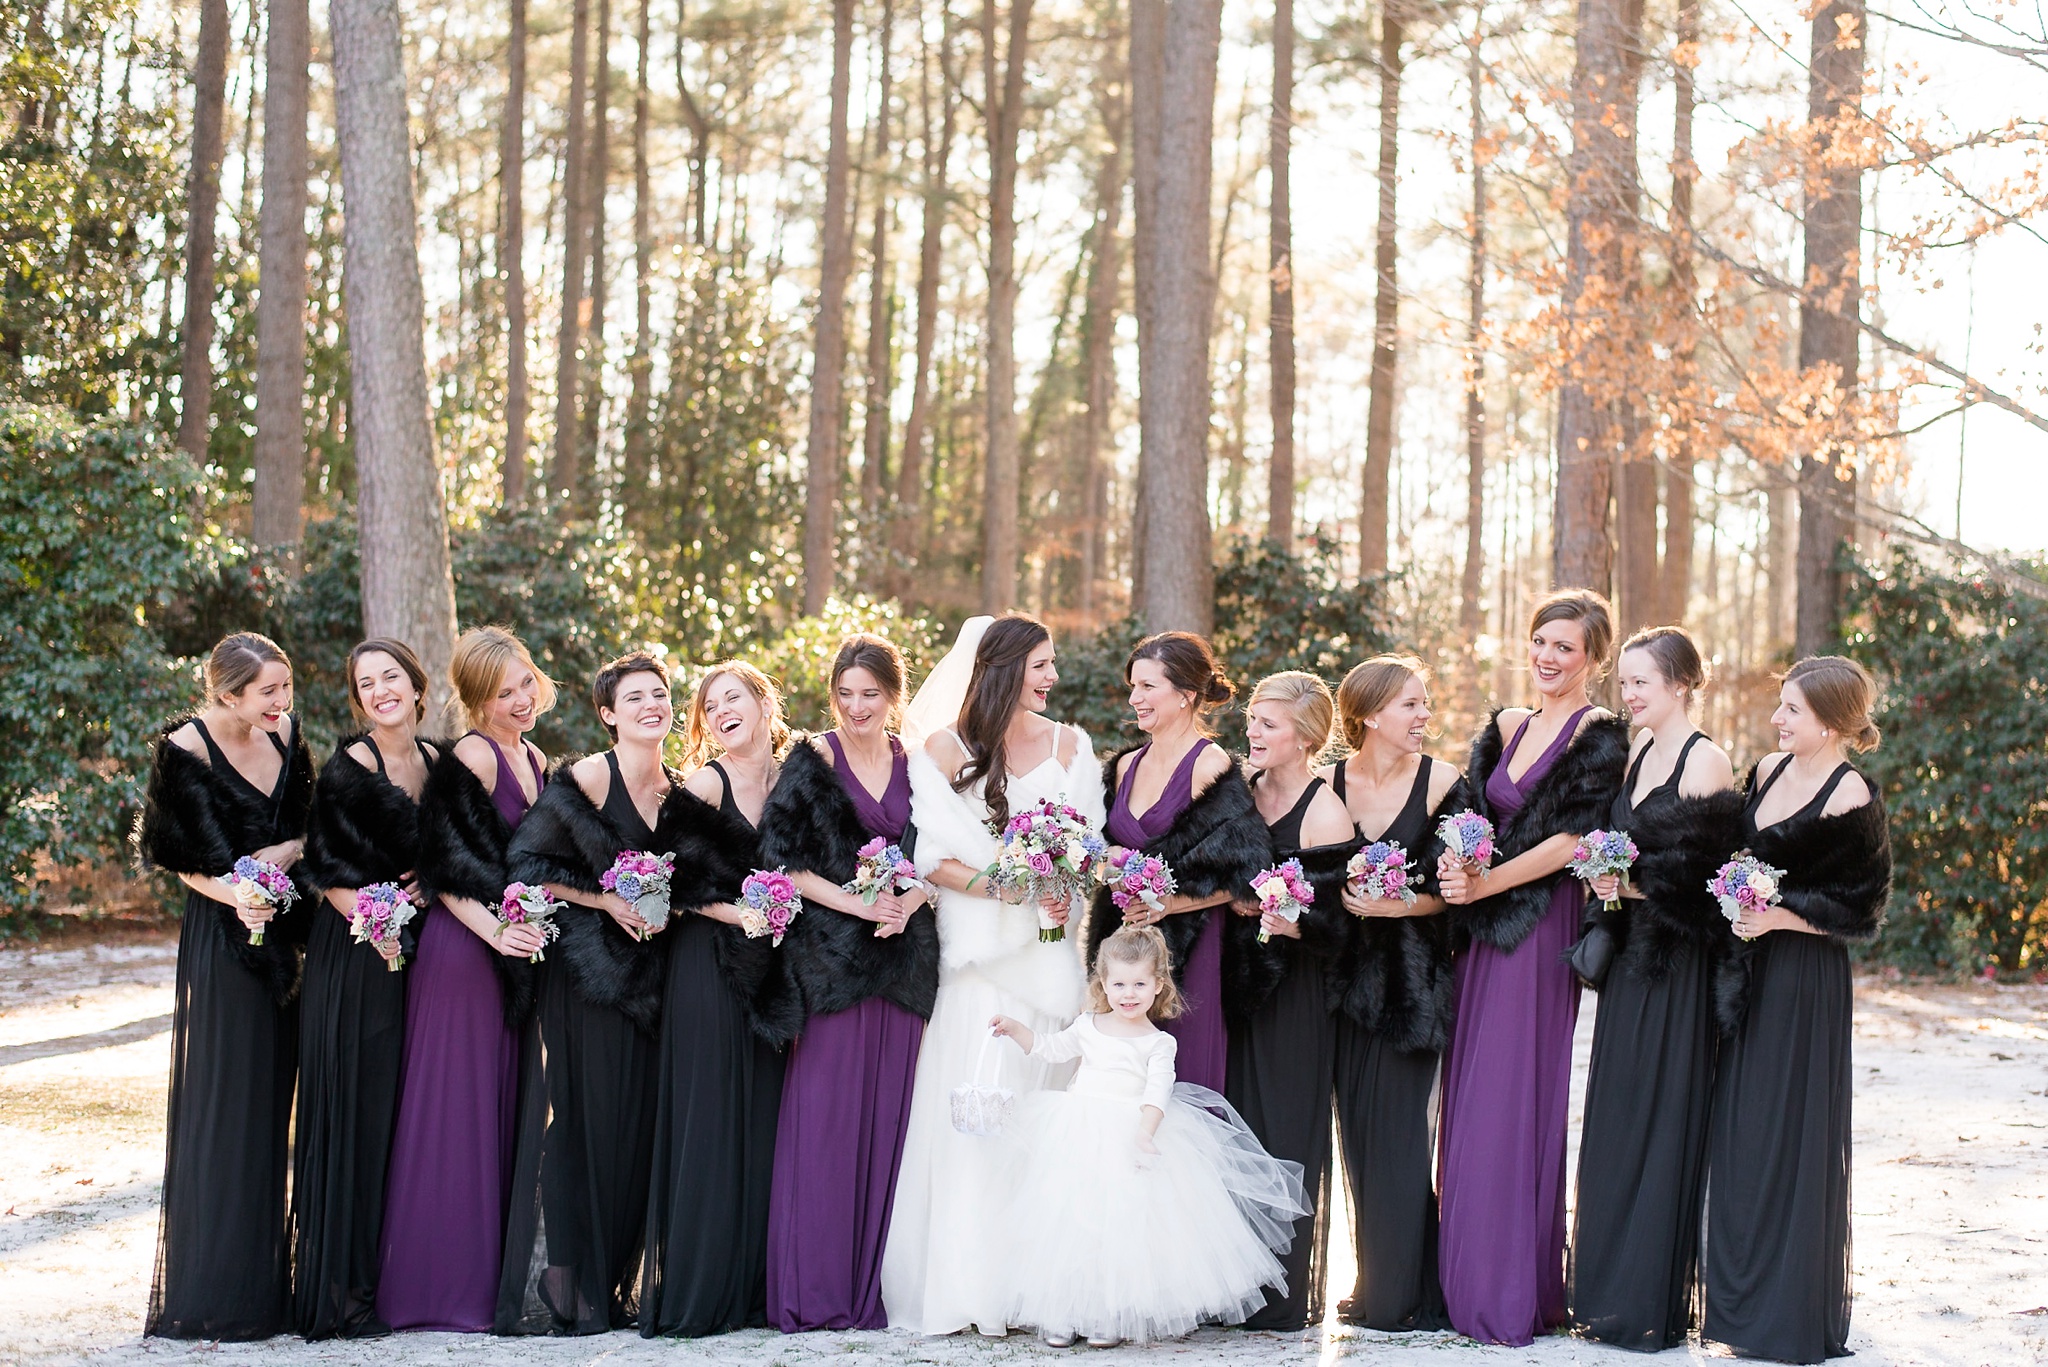 Snowy Winter Aldridge Gardens Wedding | Birmingham Alabama Wedding Photographers_0027.jpg